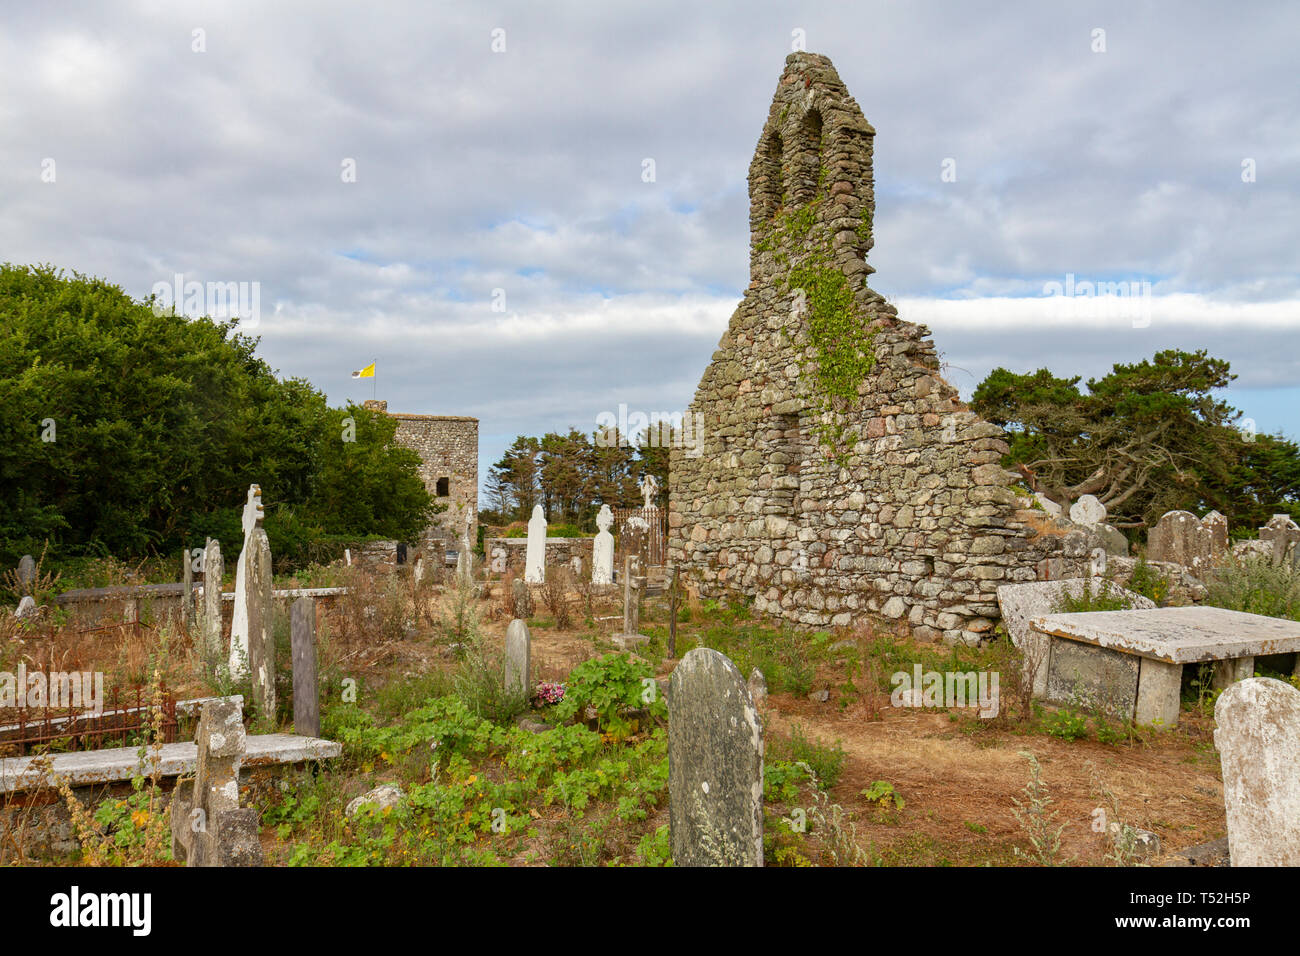 Les ruines de l'Église, un saint Asnieres 6e siècle du Monastère de l'Île Notre Dame, Co Wexford, Irlande. Banque D'Images